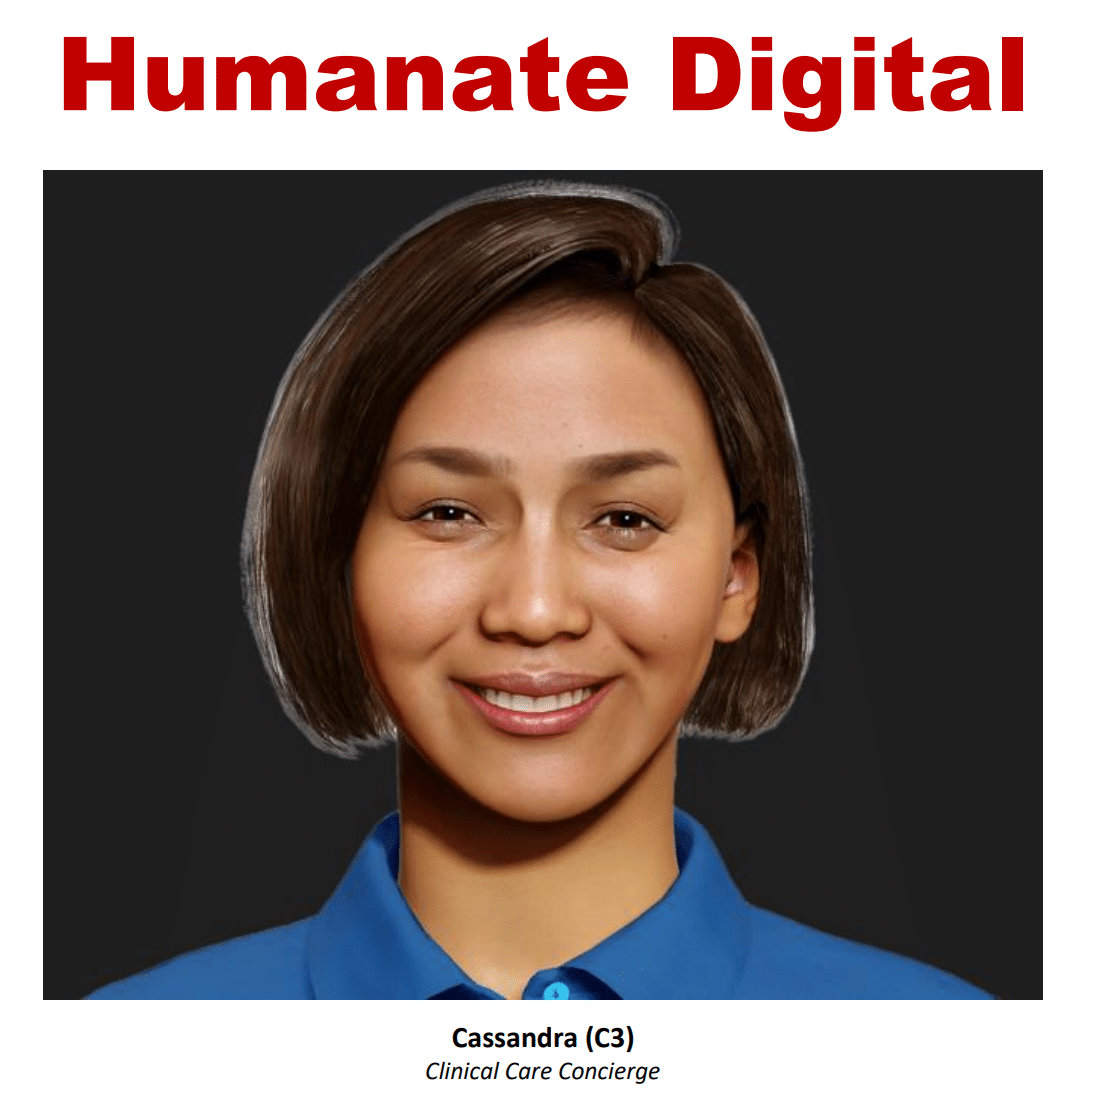 Humanate Digital